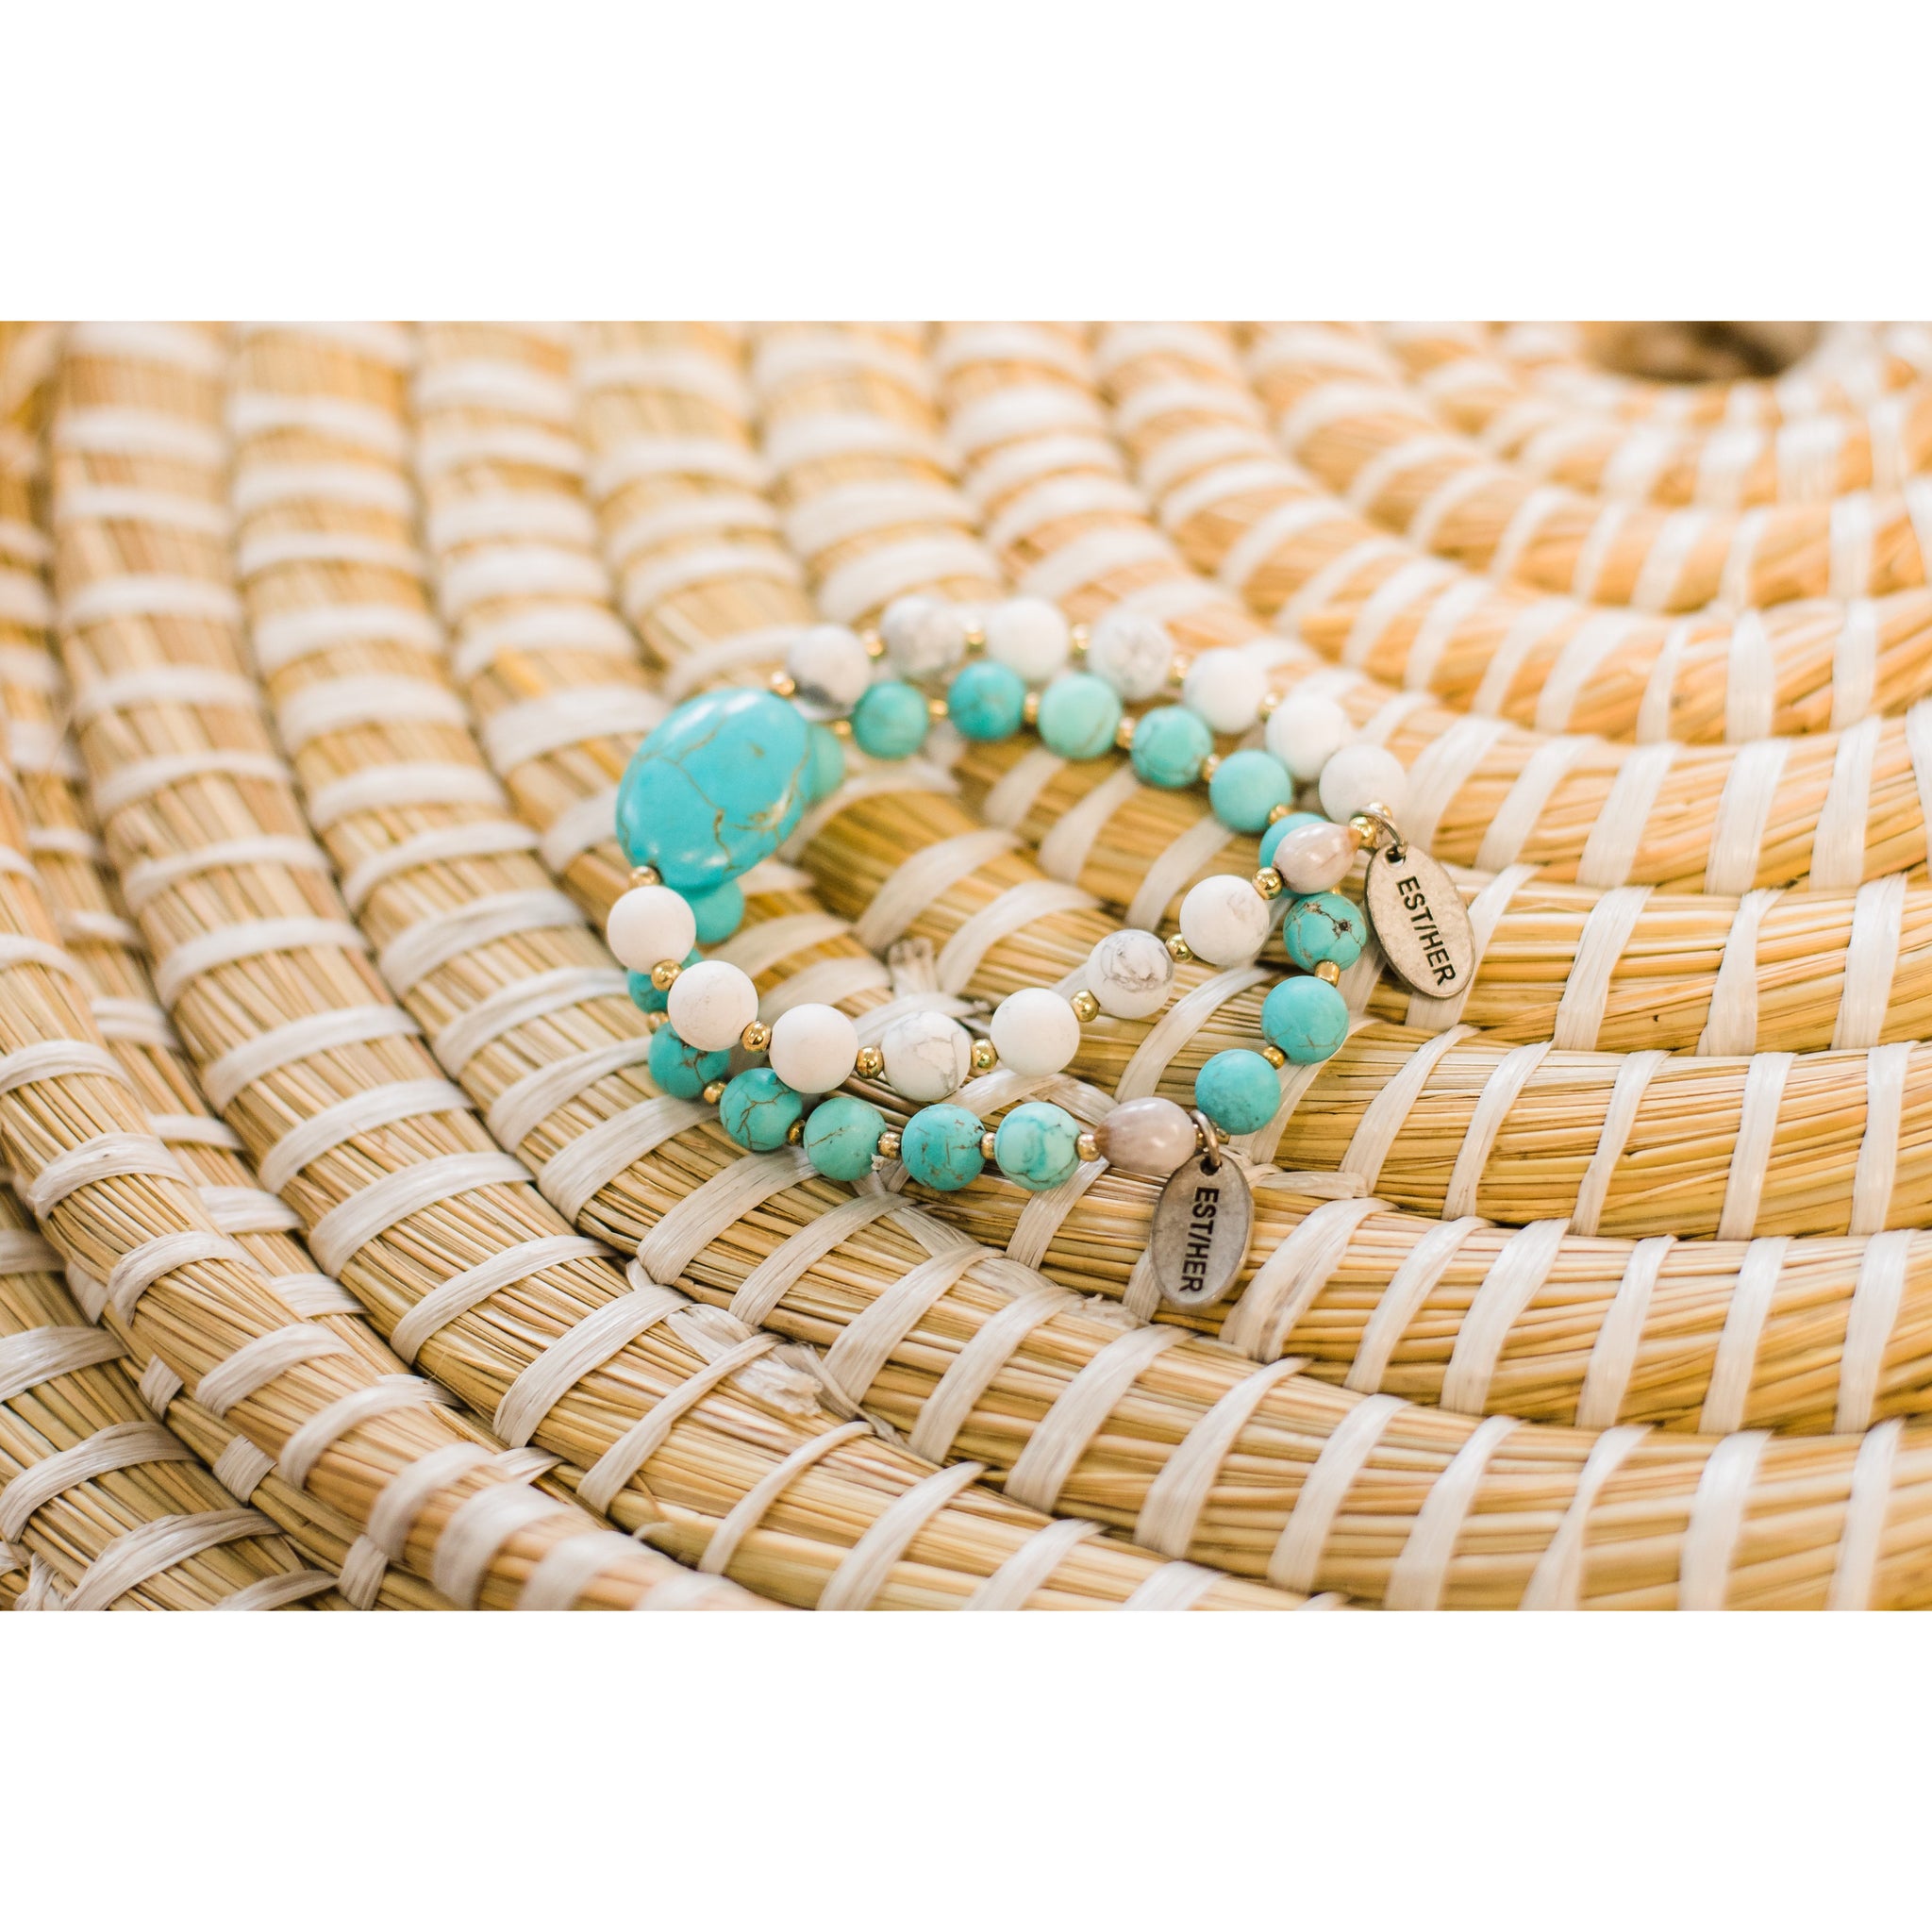 EST/HER Serenity Bracelet – Designed For Joy